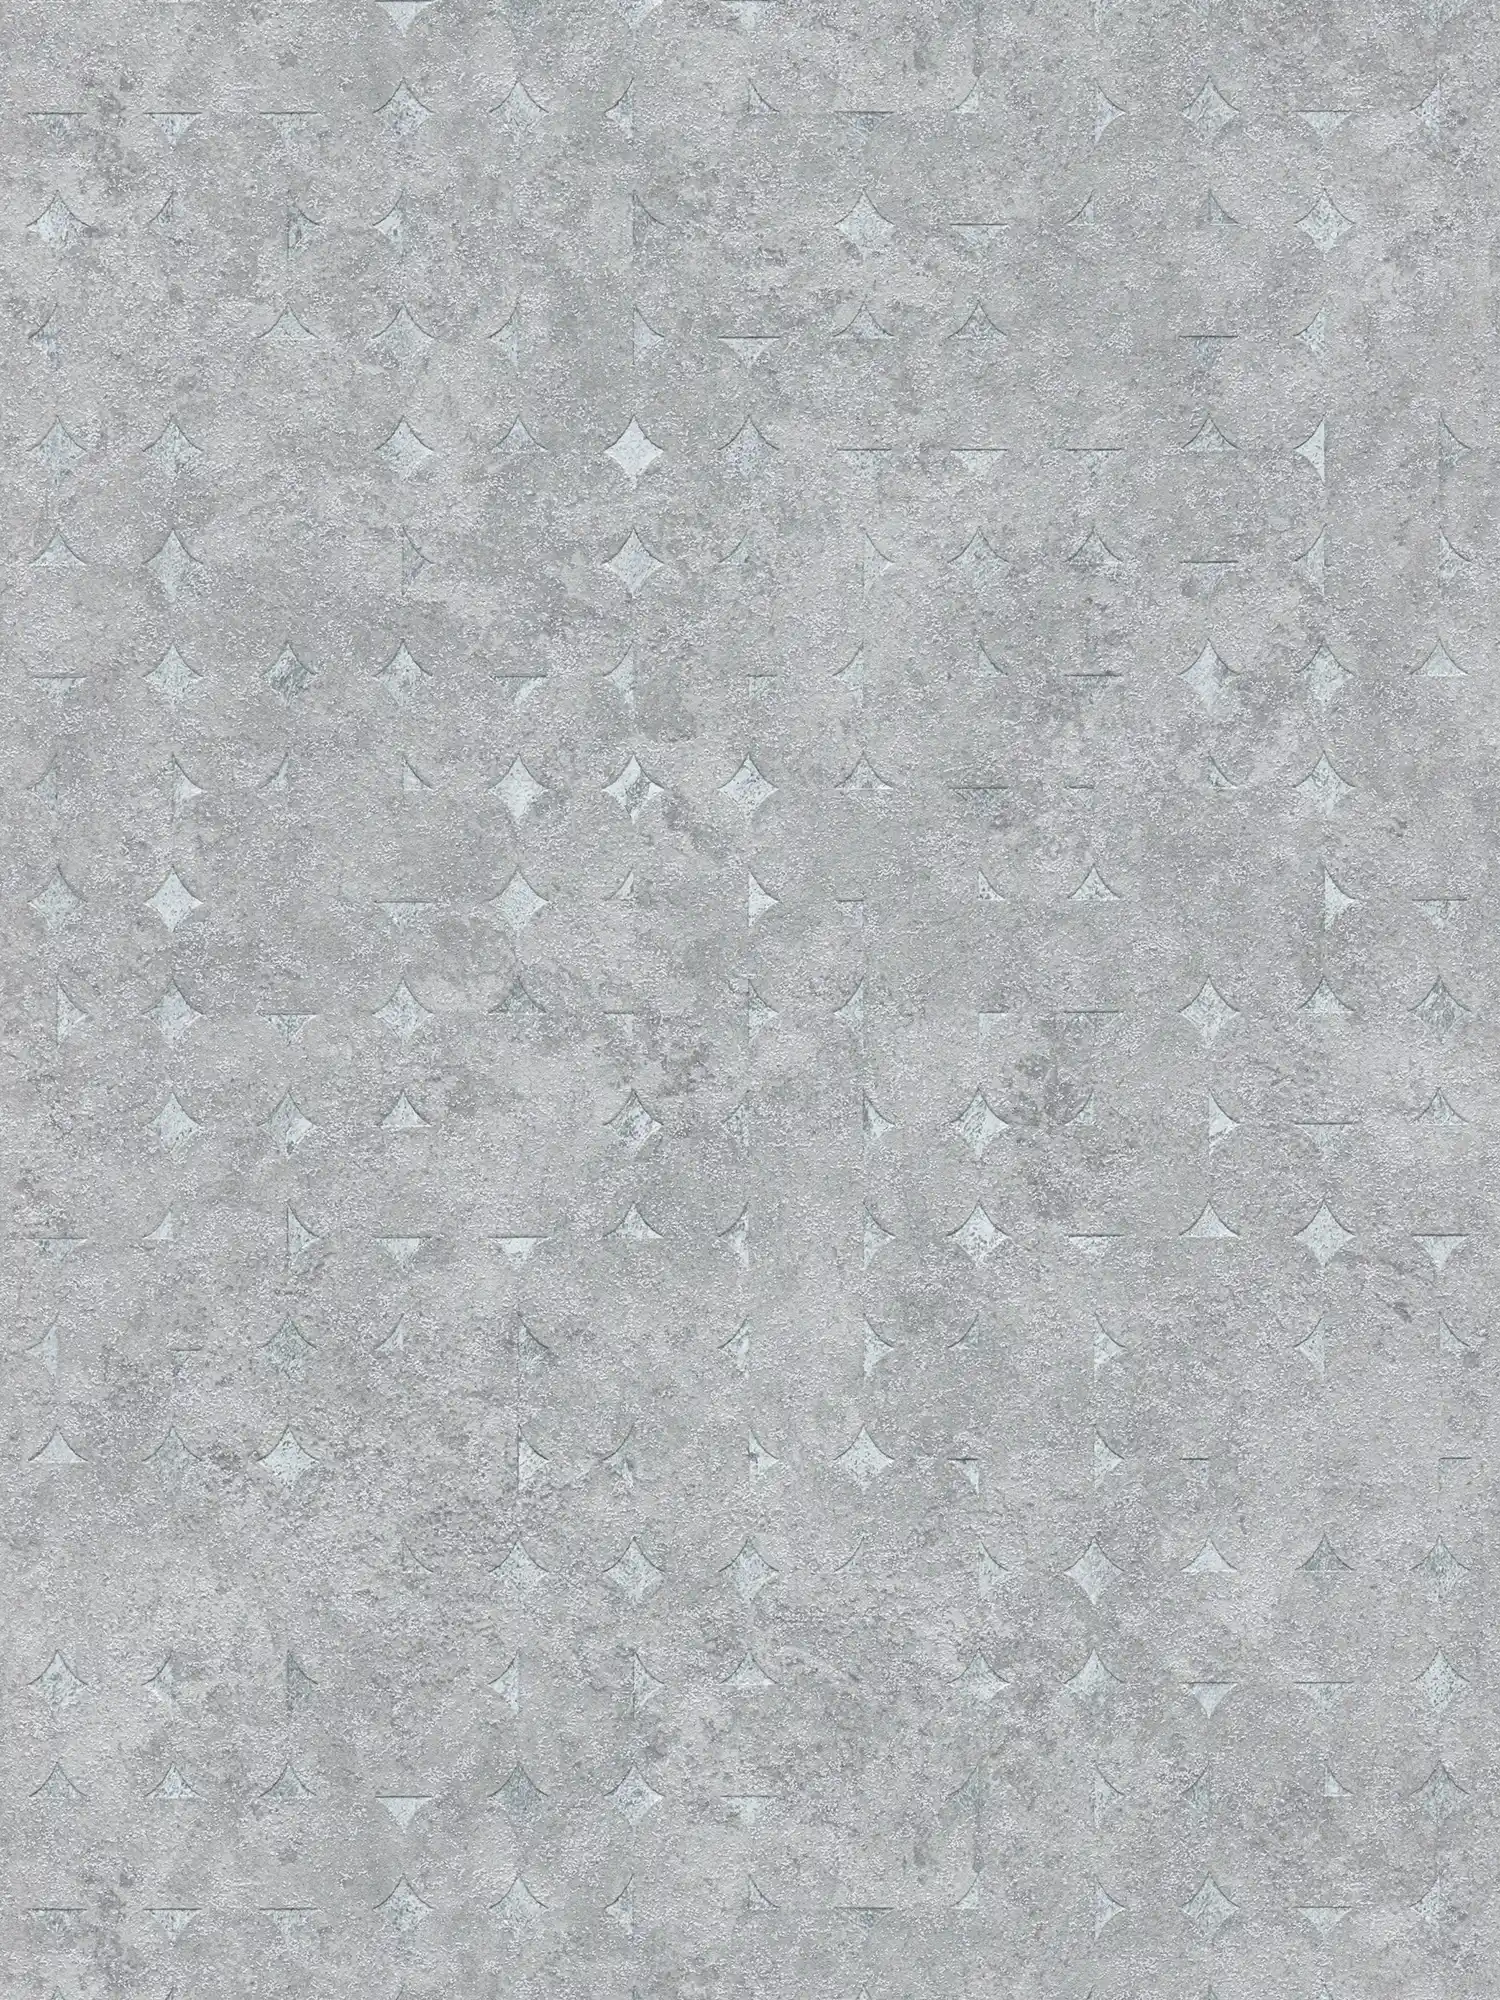 Onderlaag behang met geometrische vormen en glanzende accenten - grijs, zilver
